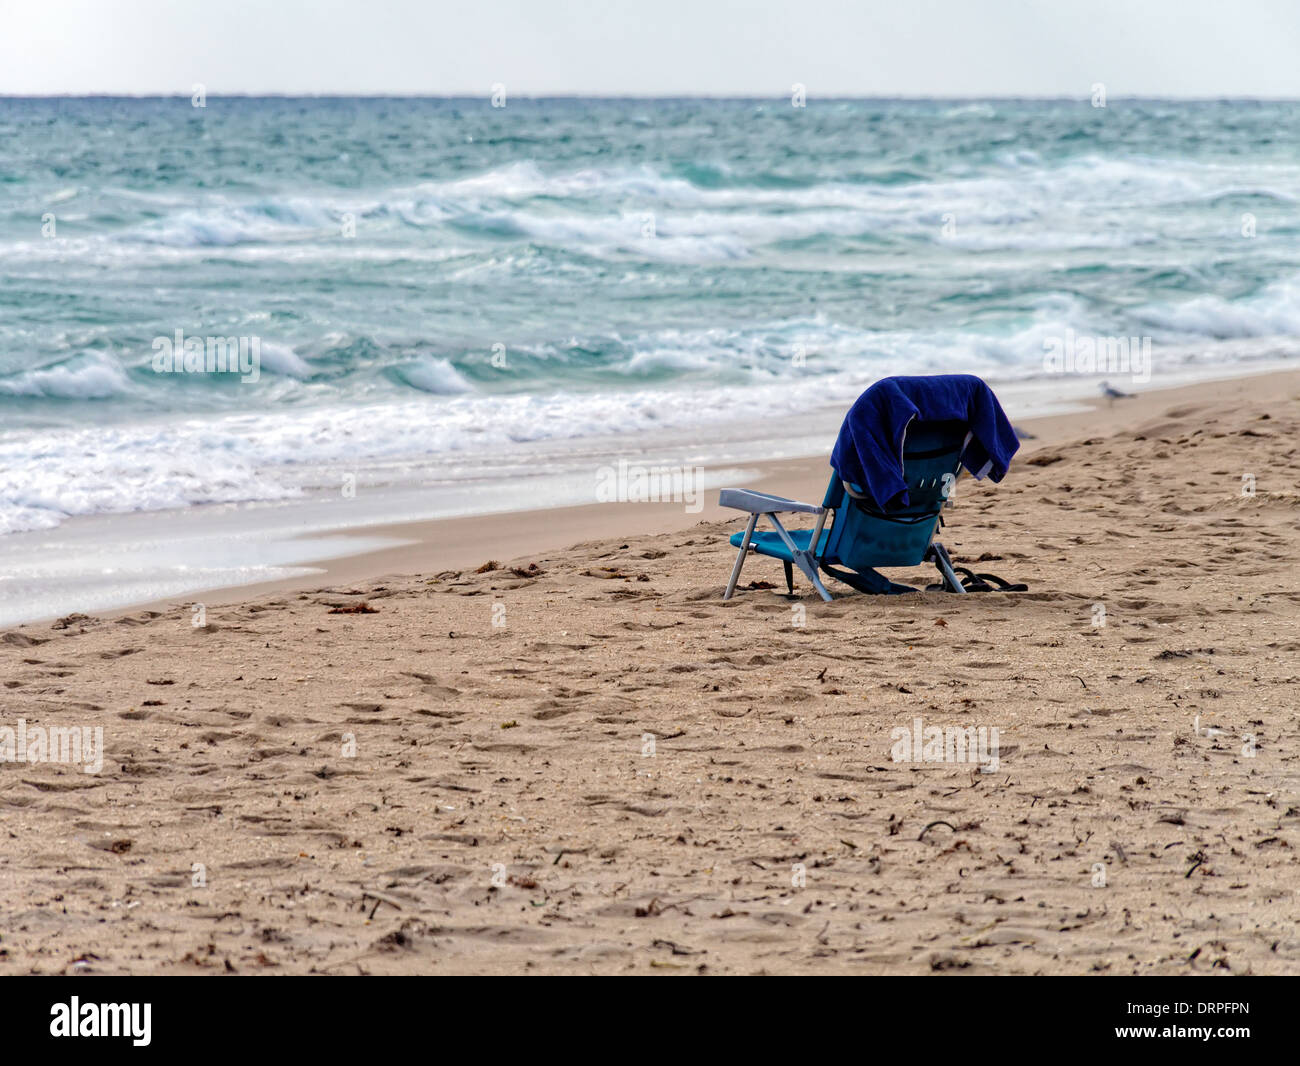 Tout seul sur une plage isolée avec surf, le sable, et la mer. Banque D'Images